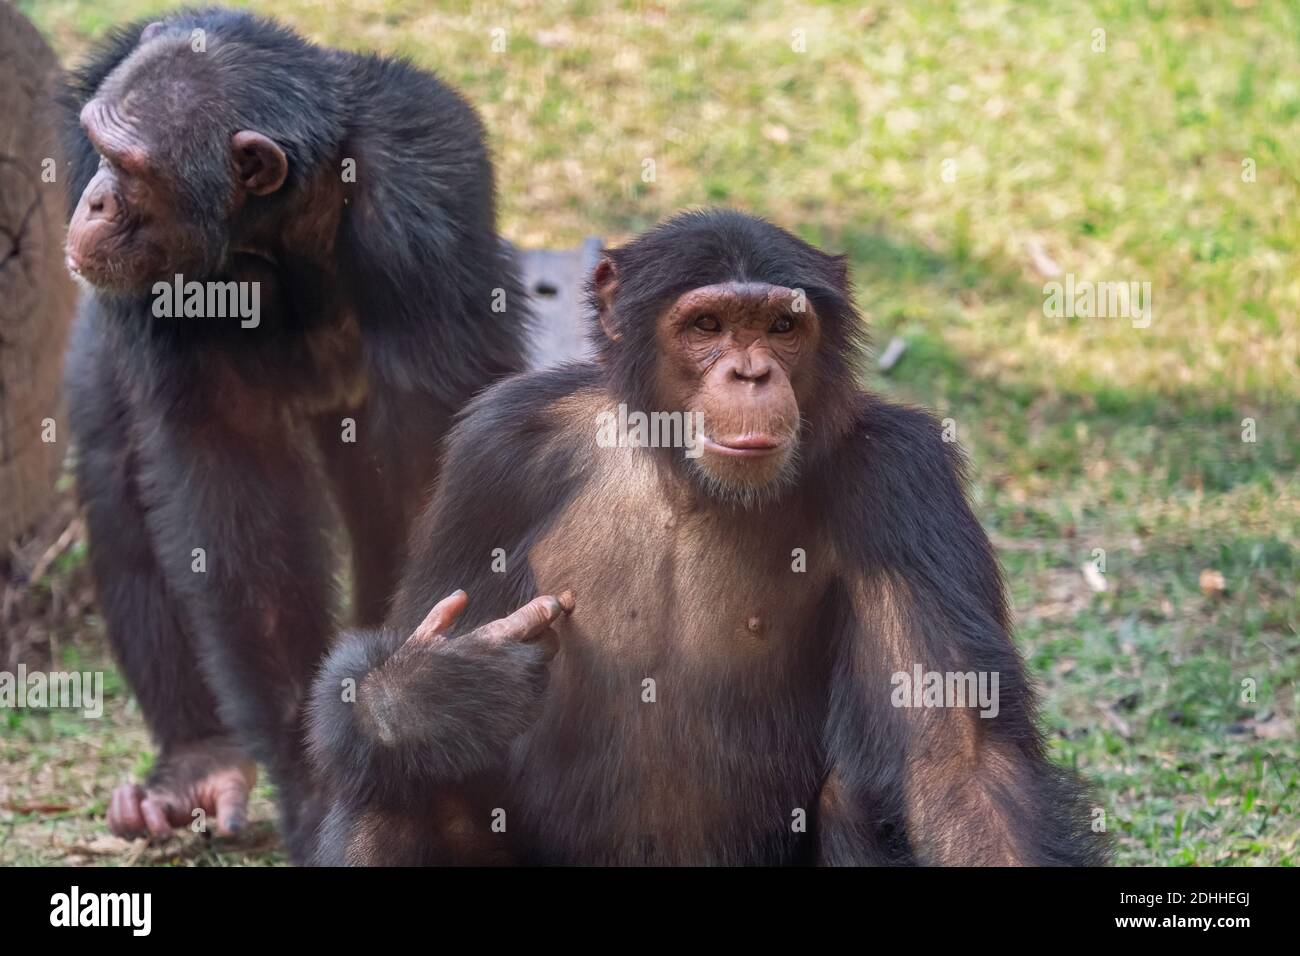 Primates chimpancés en los santuarios de vida silvestre de la India Foto de stock